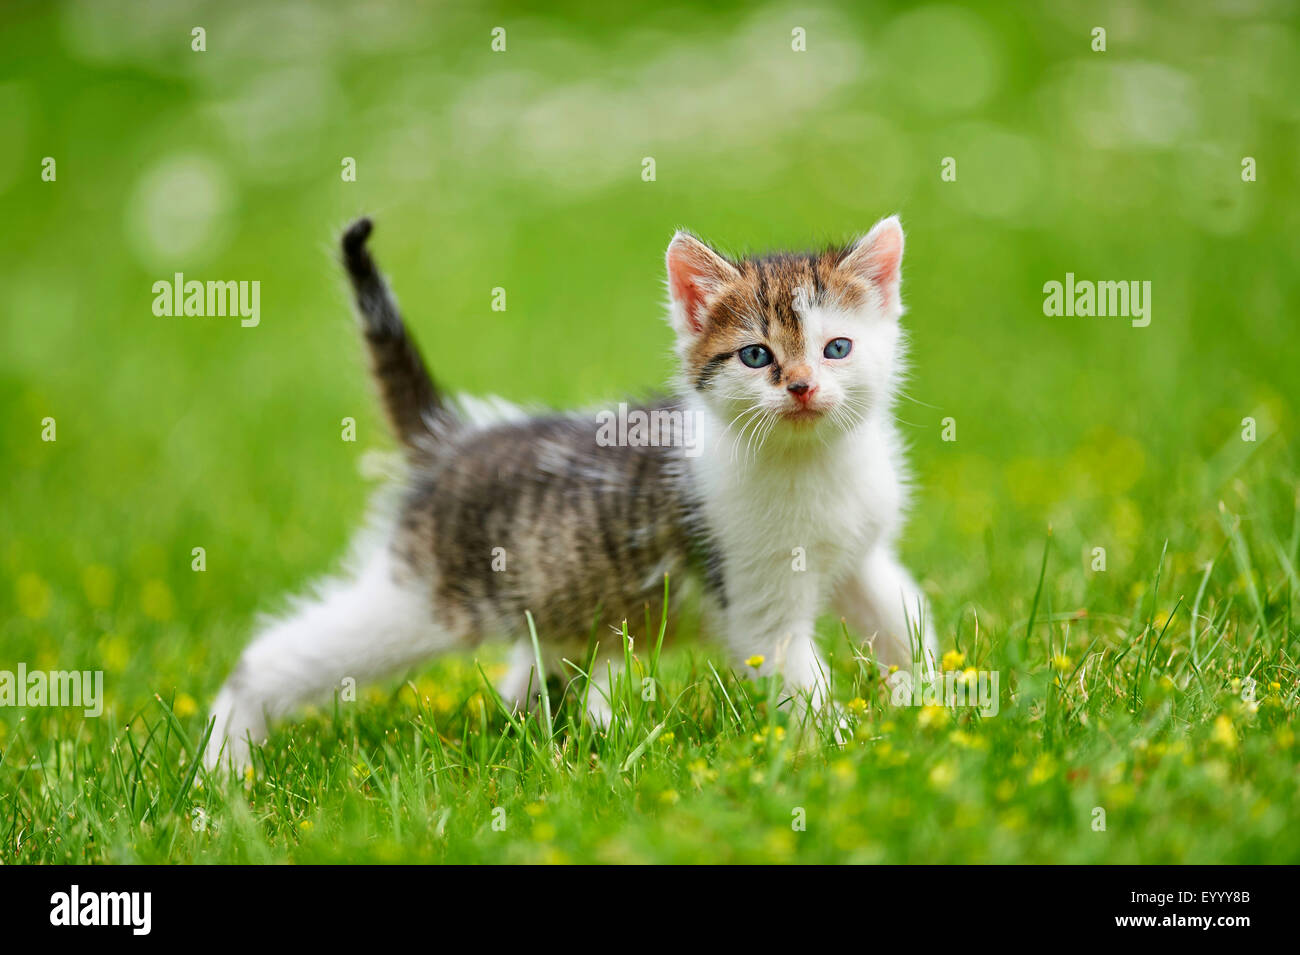 Chat domestique, le chat domestique (Felis silvestris catus) f., 6 semaines chaton dans un pré, Allemagne Banque D'Images